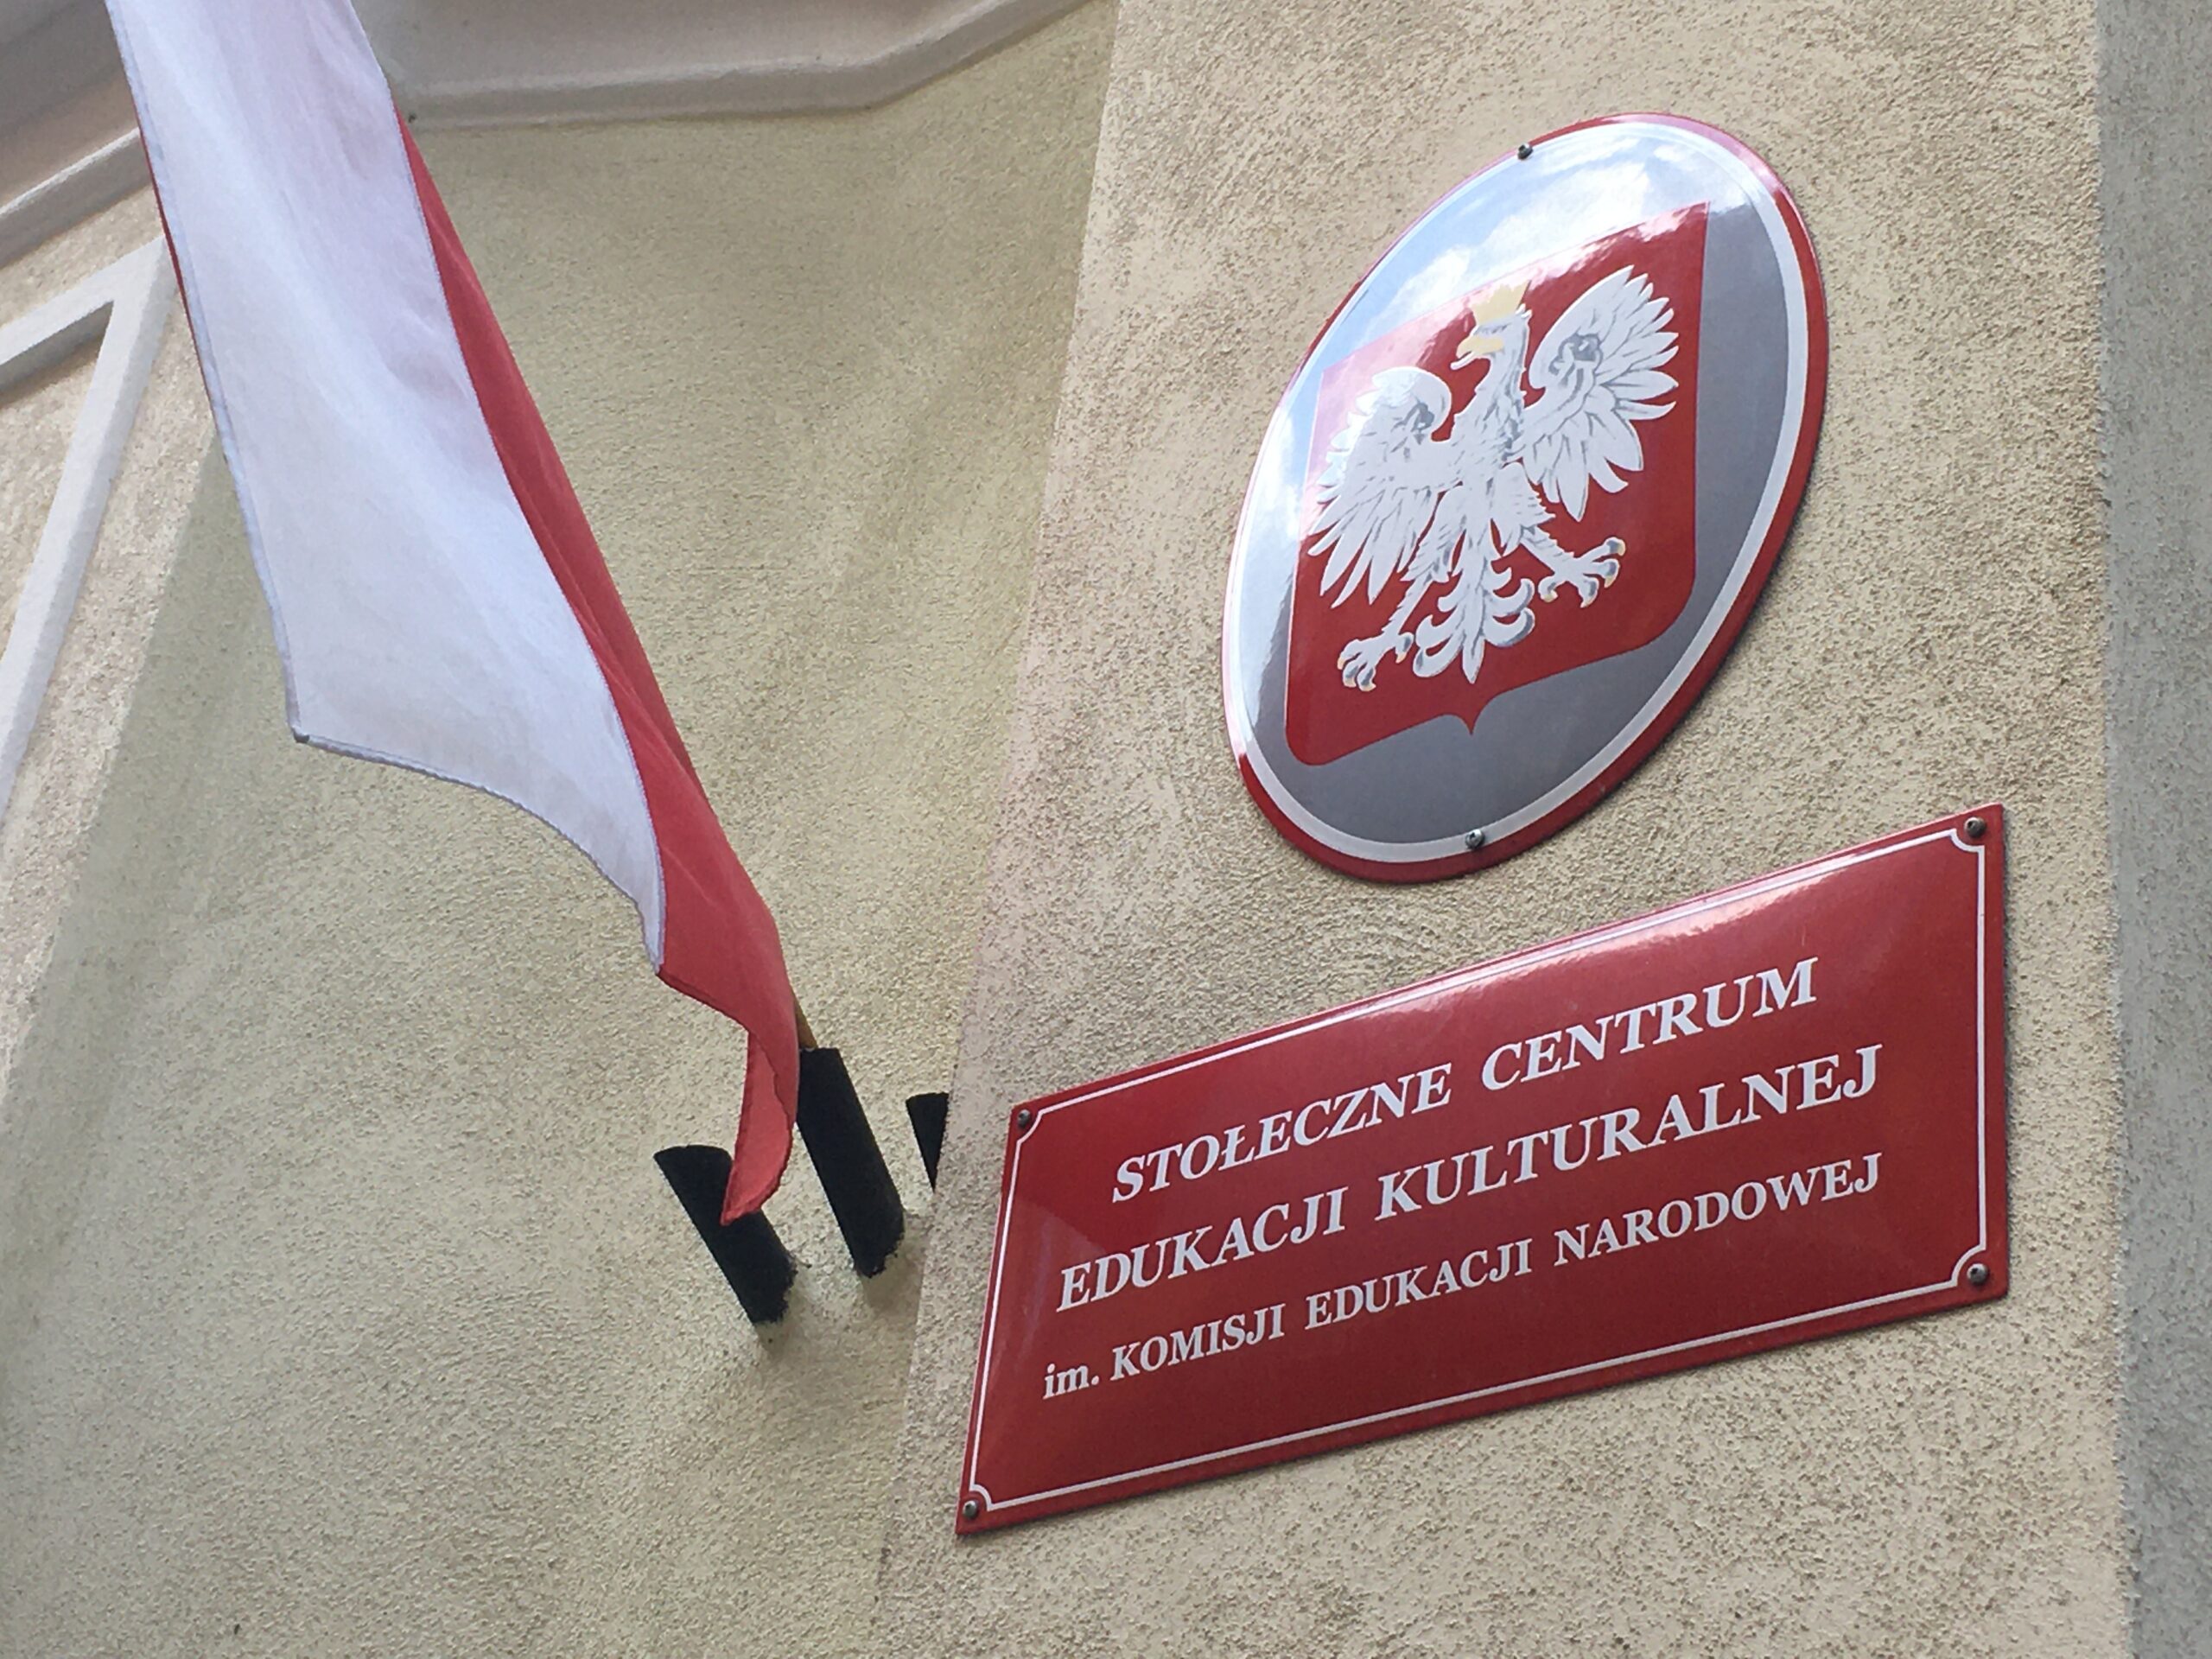 pętla powierzchniowa obwodowa na sali projekcyjnej Stołeczne Centrum Edukacji Kulturalnej w Warszawie